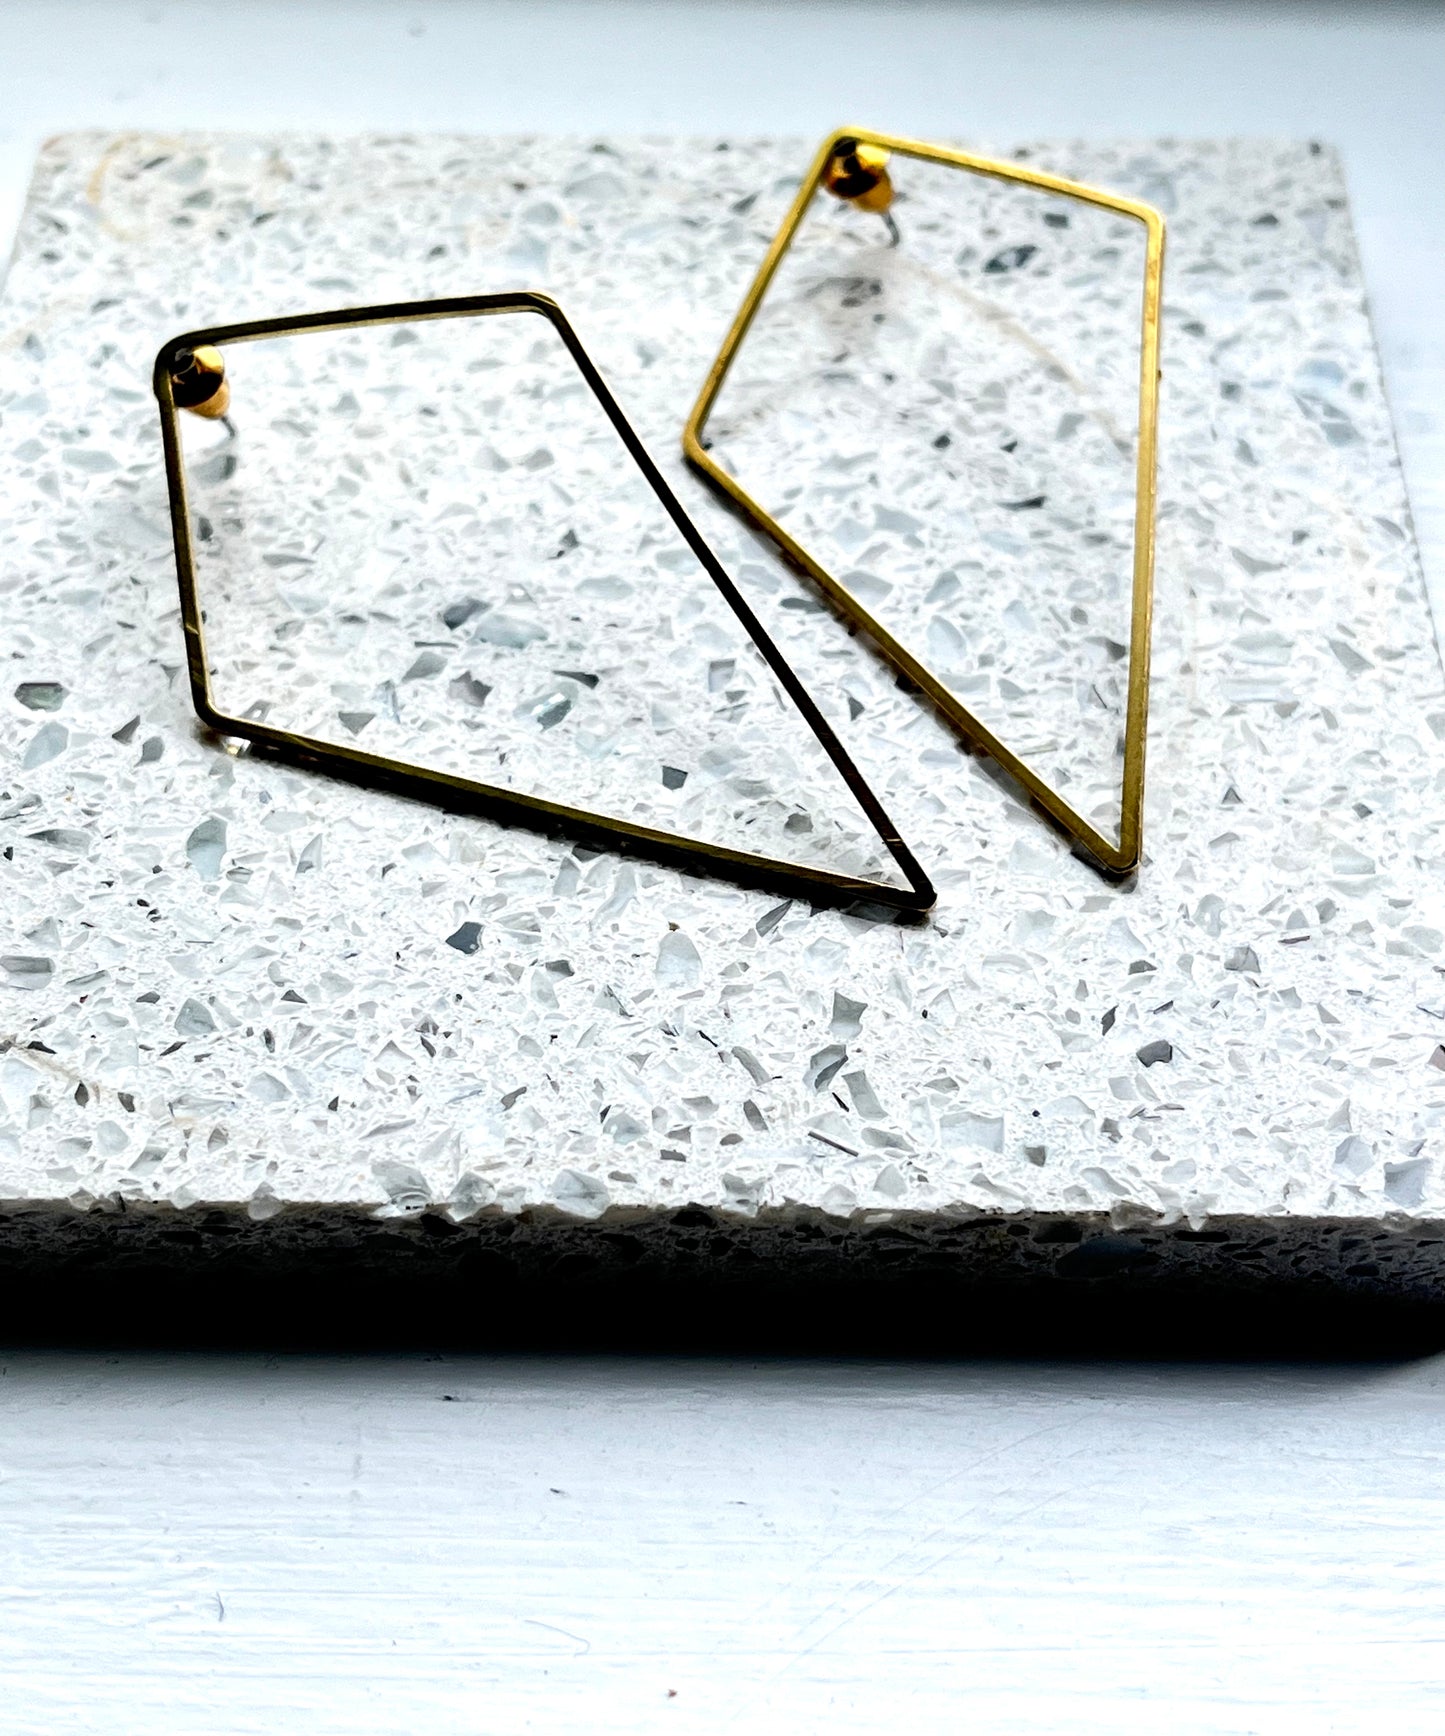 Geometric earrings - Kybalion Jewellery